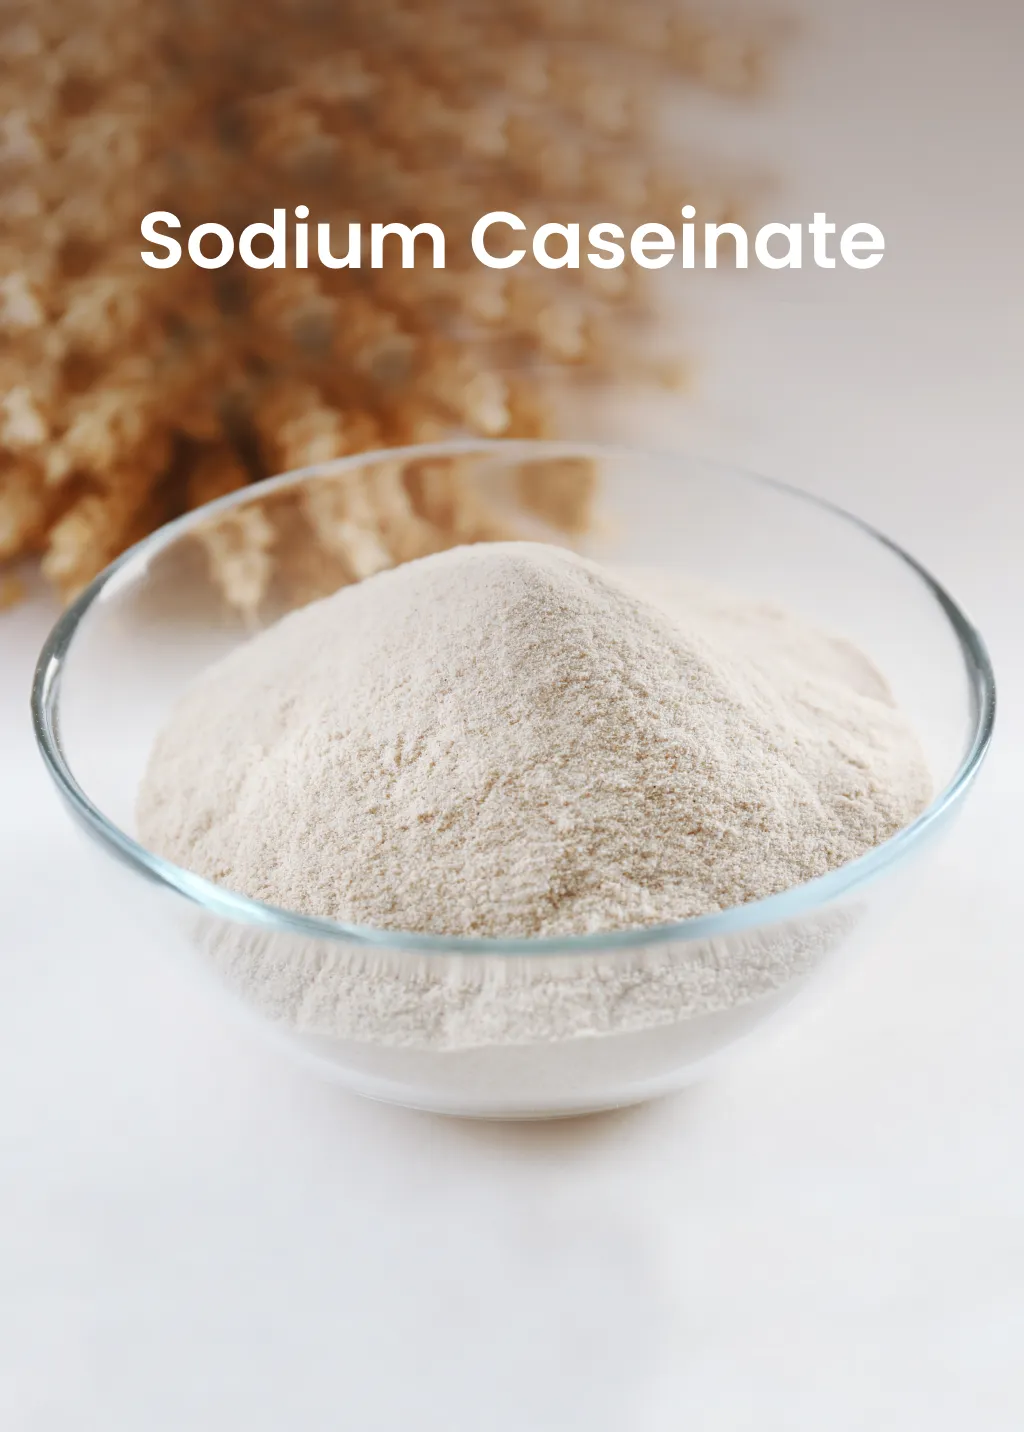 Sodium Caseinate from Milk Powder Asia